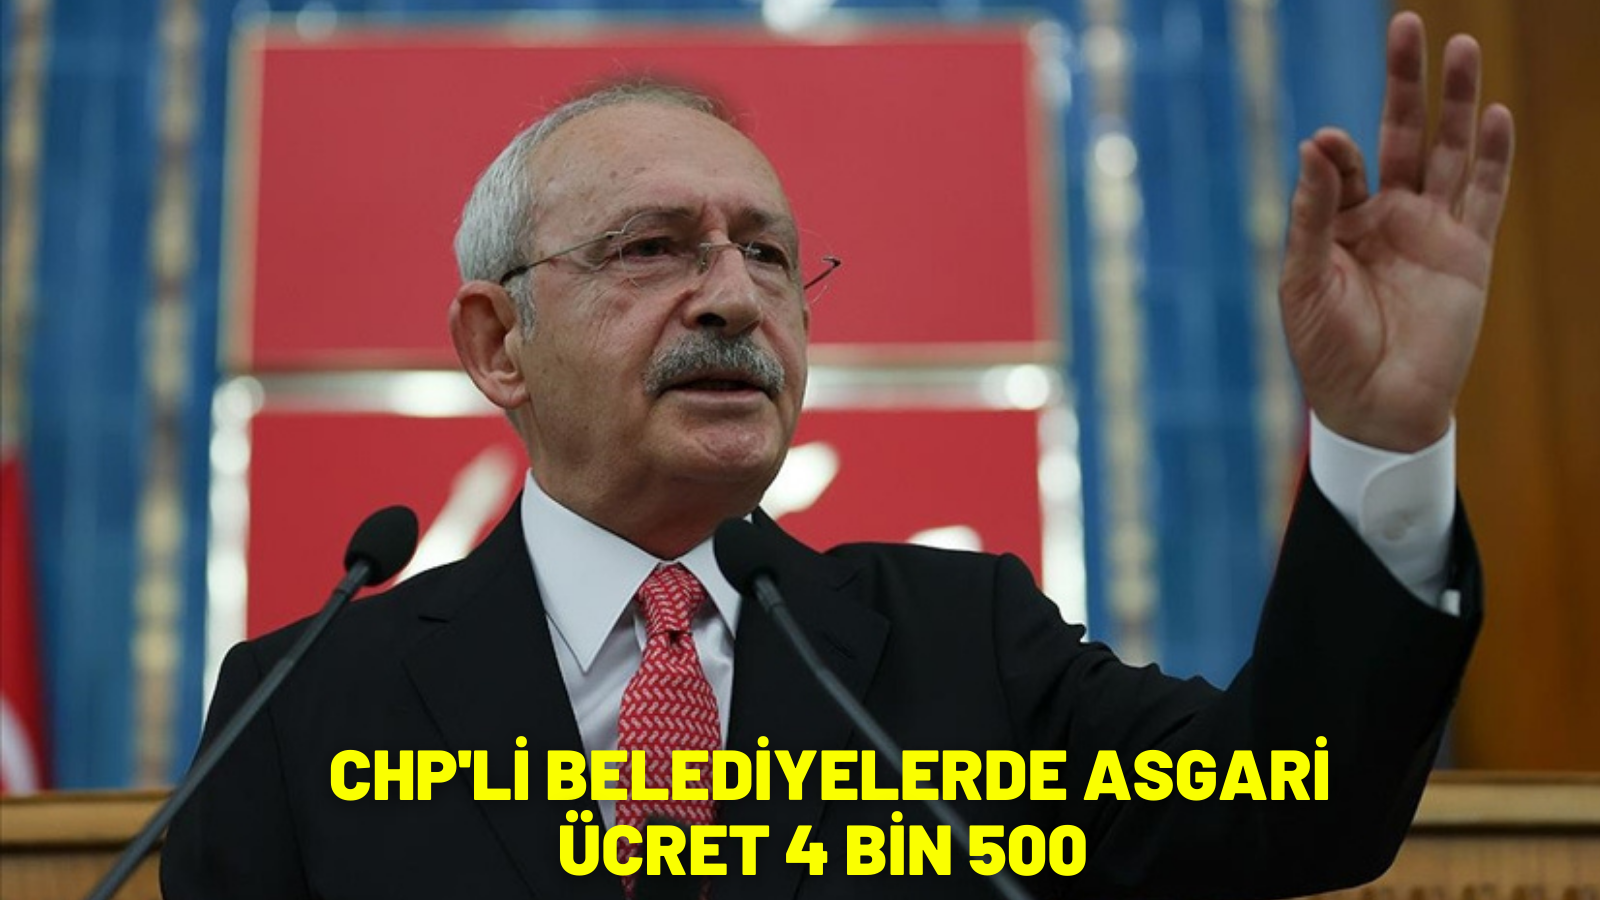 CHP lideri Kılıçdaroğlu, CHP’li belediyelerde asgari ücretin 4 bin 500 lira olacağını duyurdu